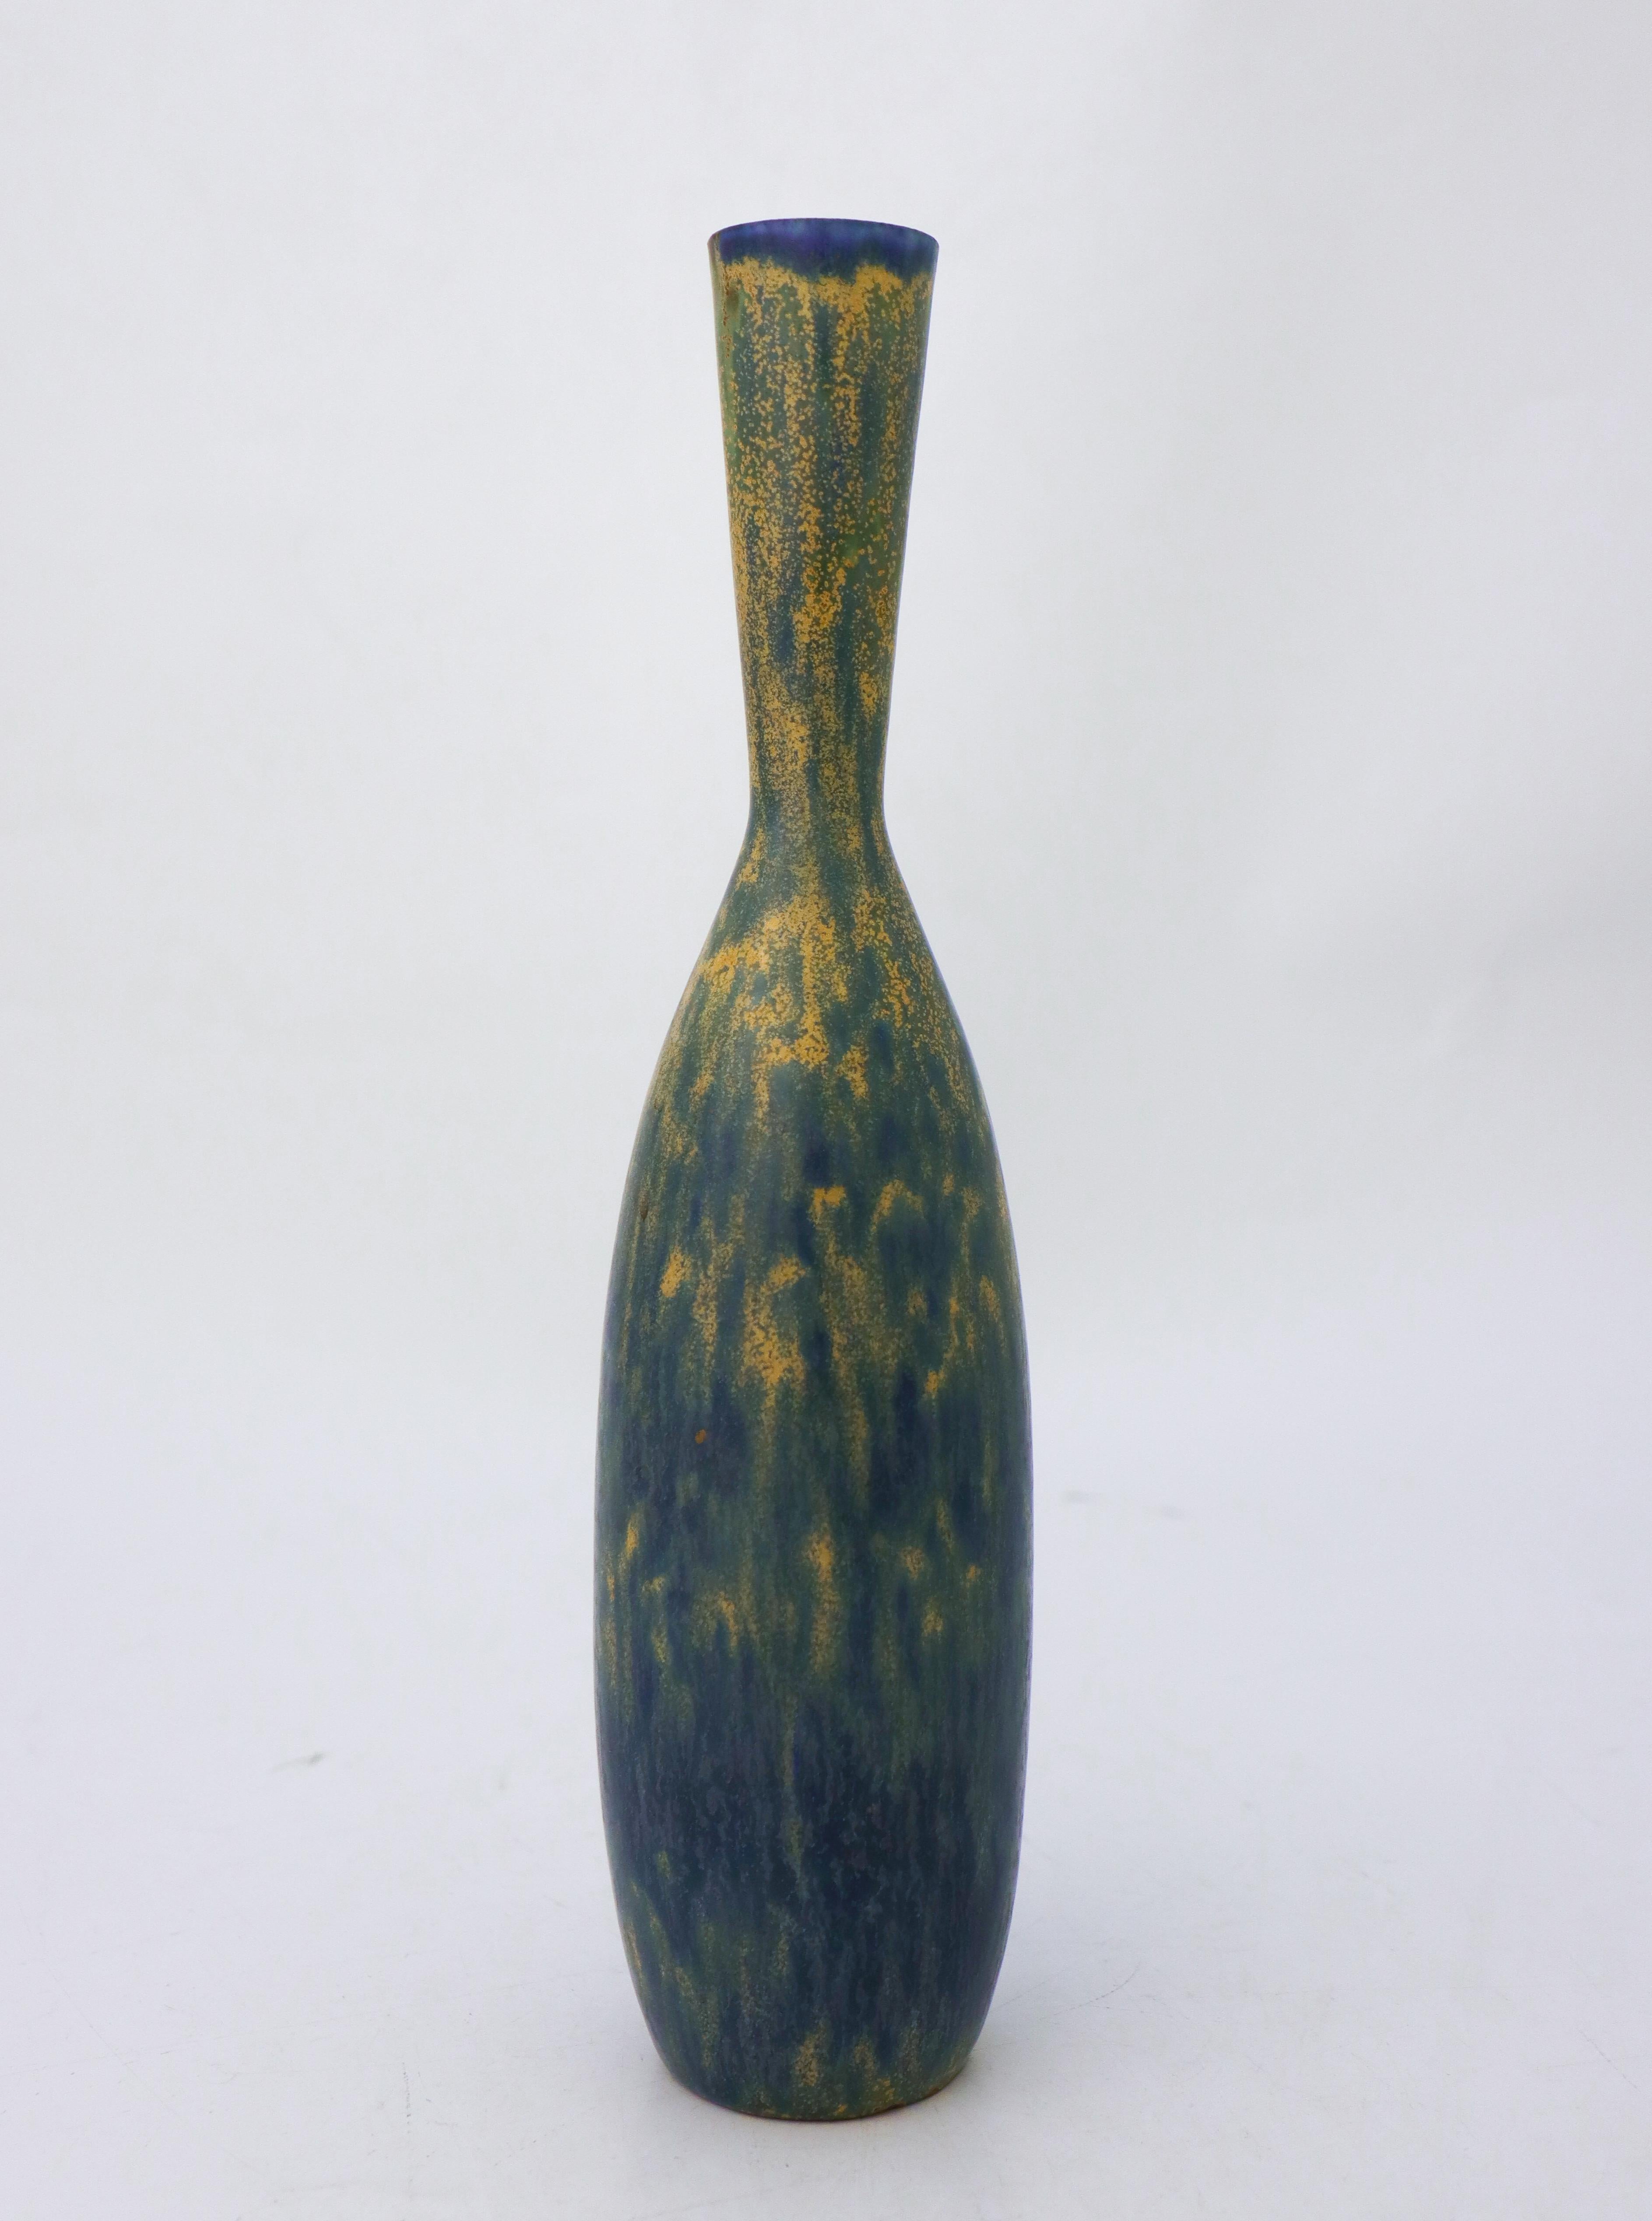 Eine Vase mit einer schönen blau-gelben Glasur, entworfen von Carl-Harry Stålhane in Rörstrand. Die Vase ist 28 cm (11,2